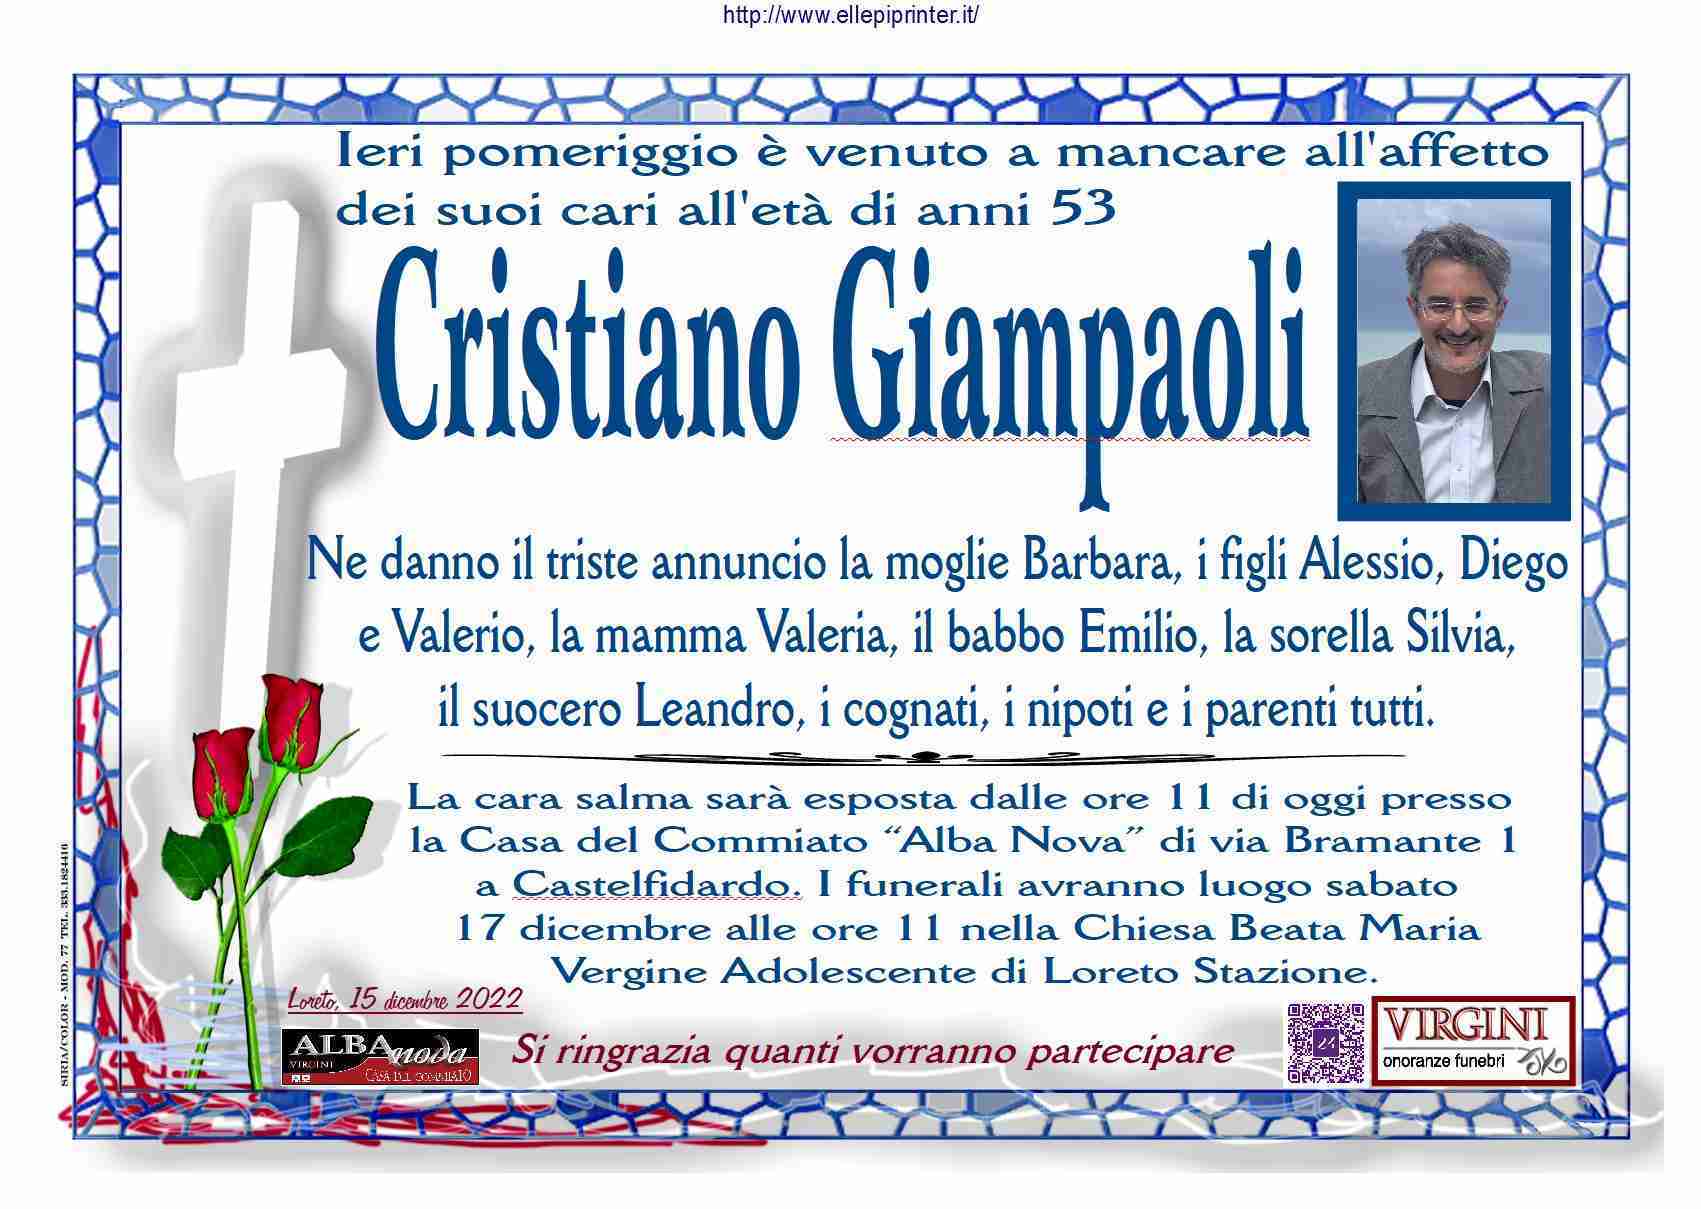 Cristiano Giampaoli